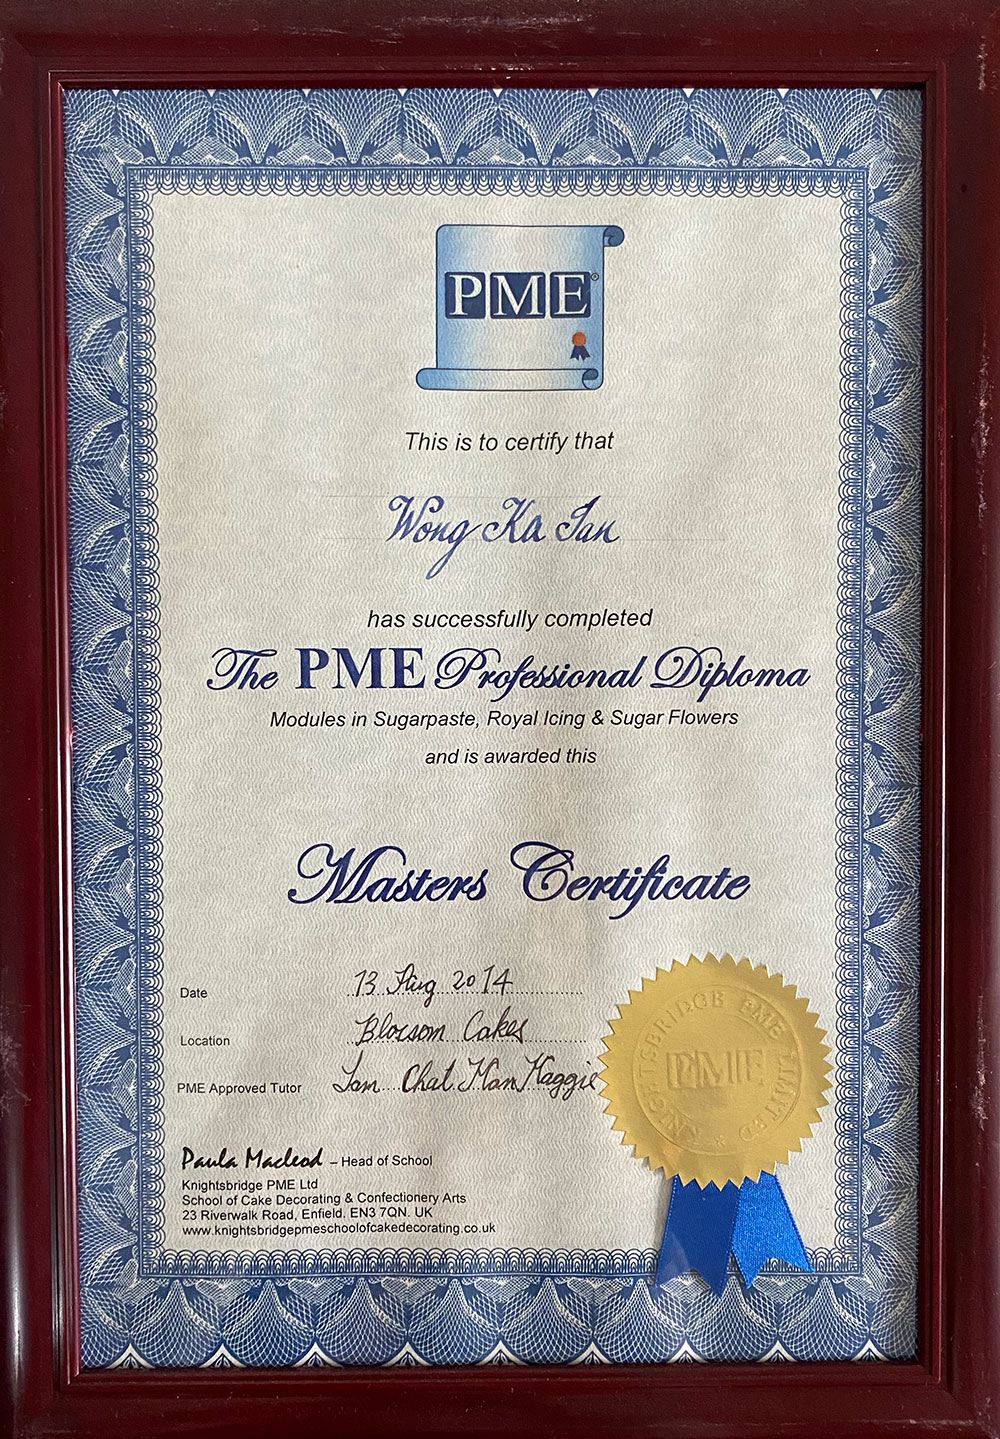 PME Masters Certificate for Wong Ka Ian